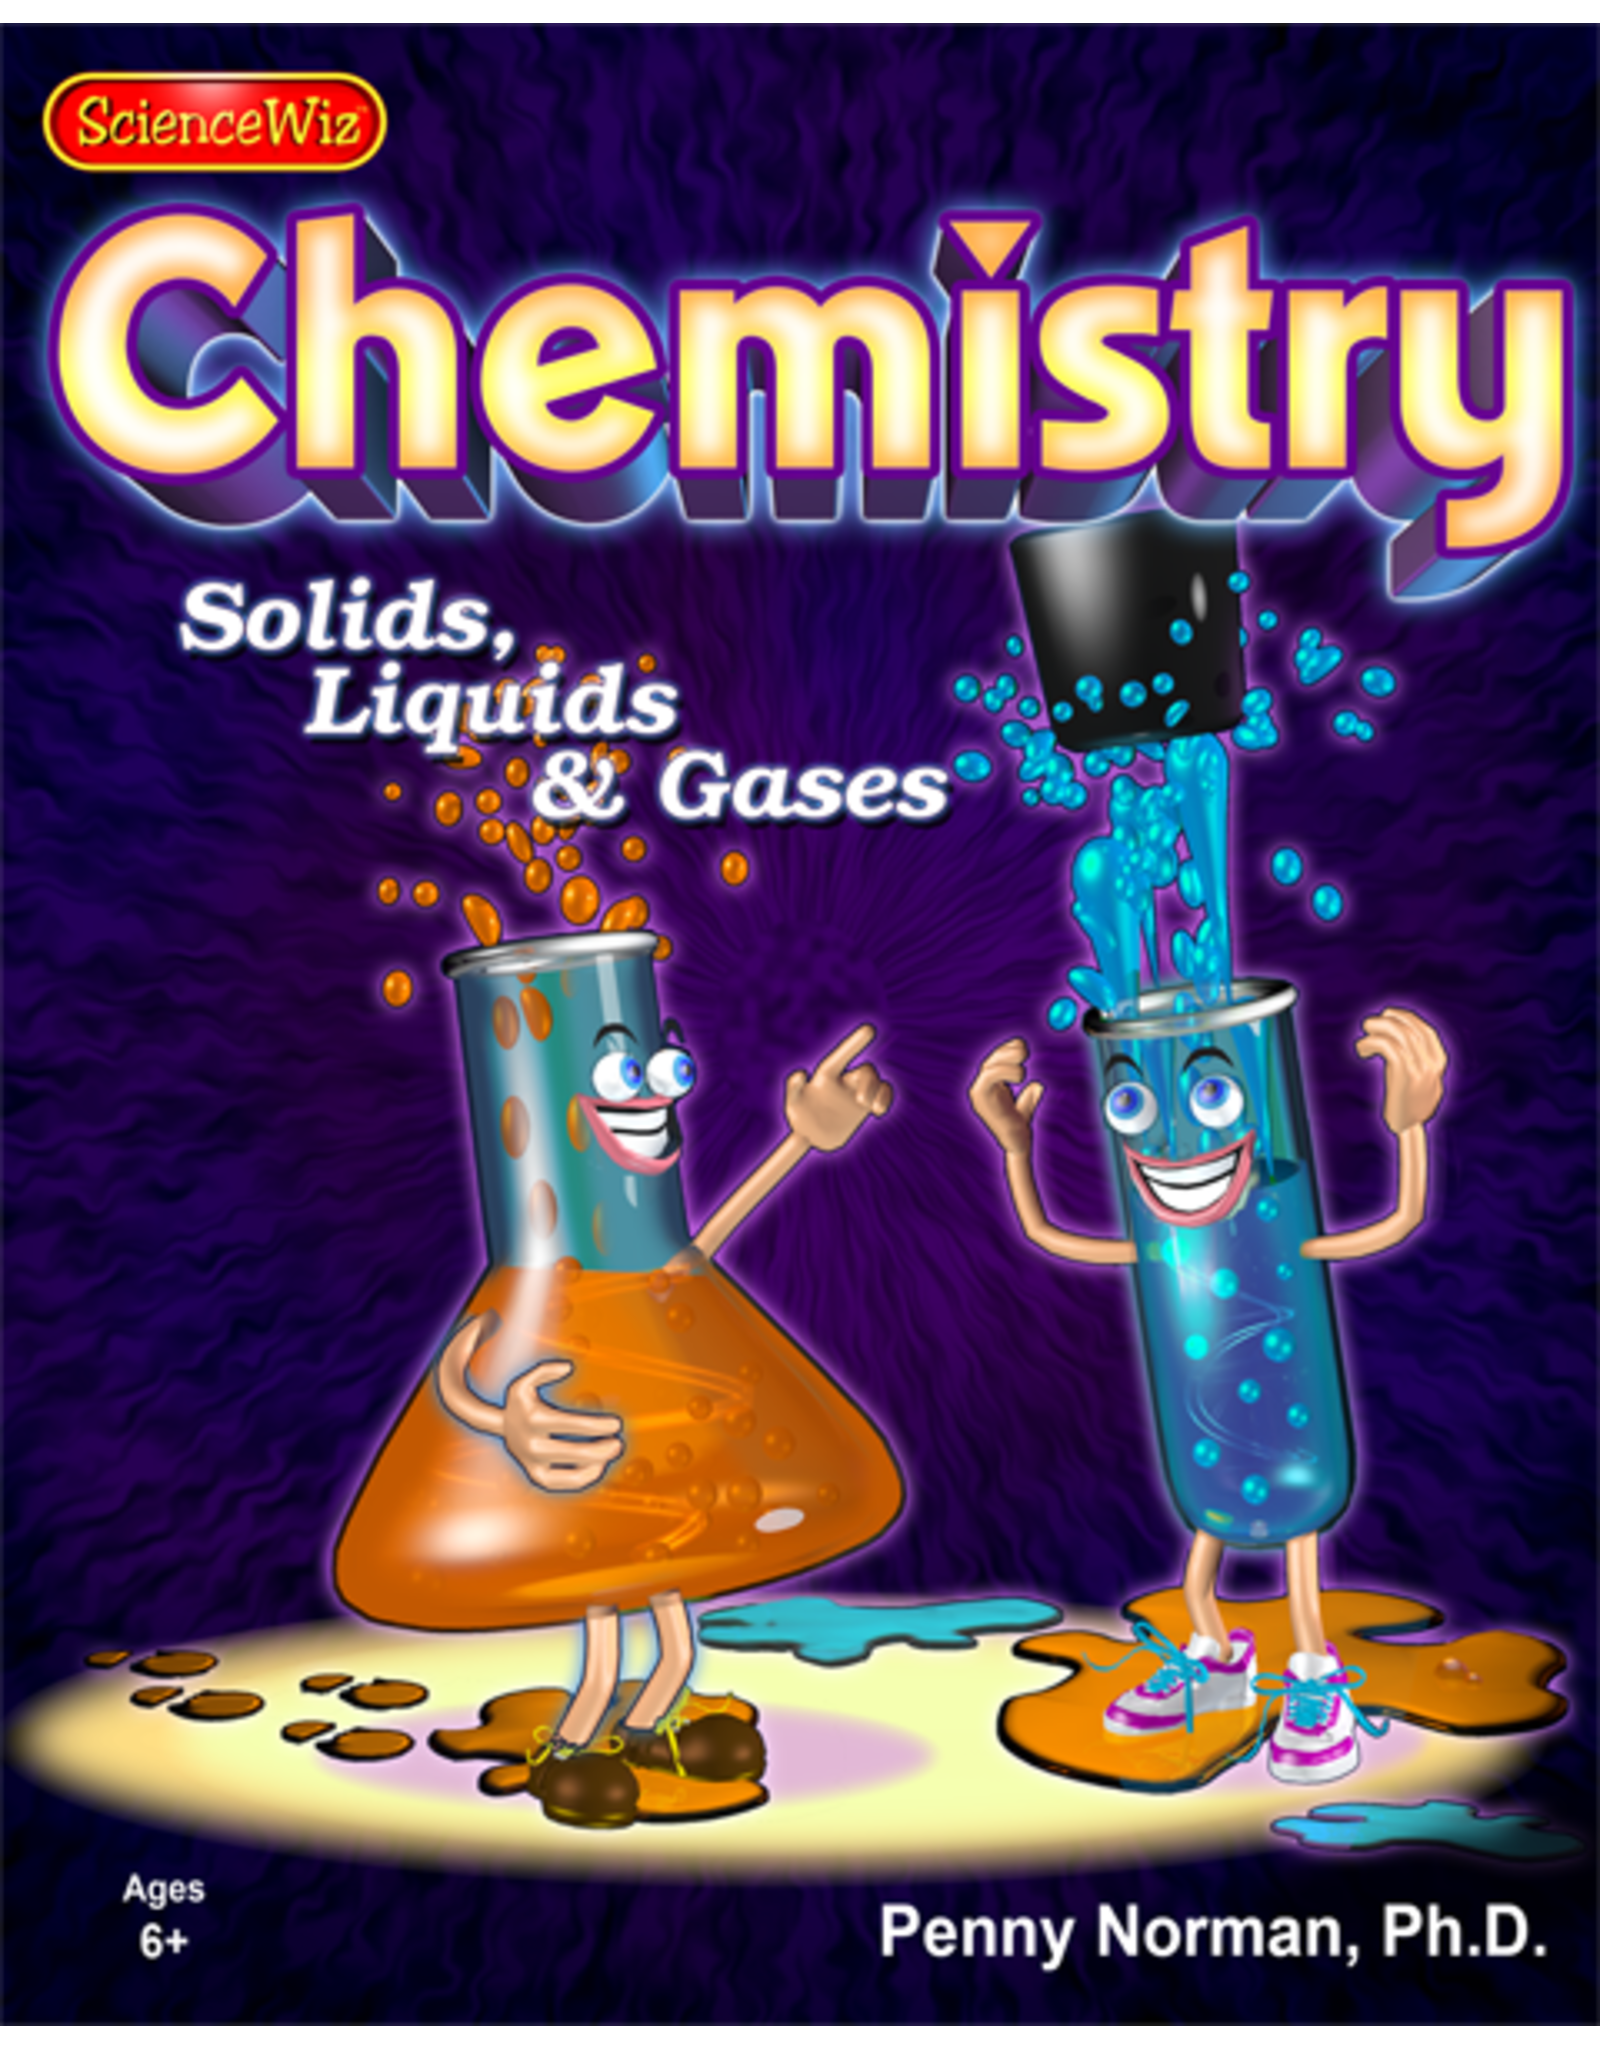 Classic ScienceWiz Chemistry Kit